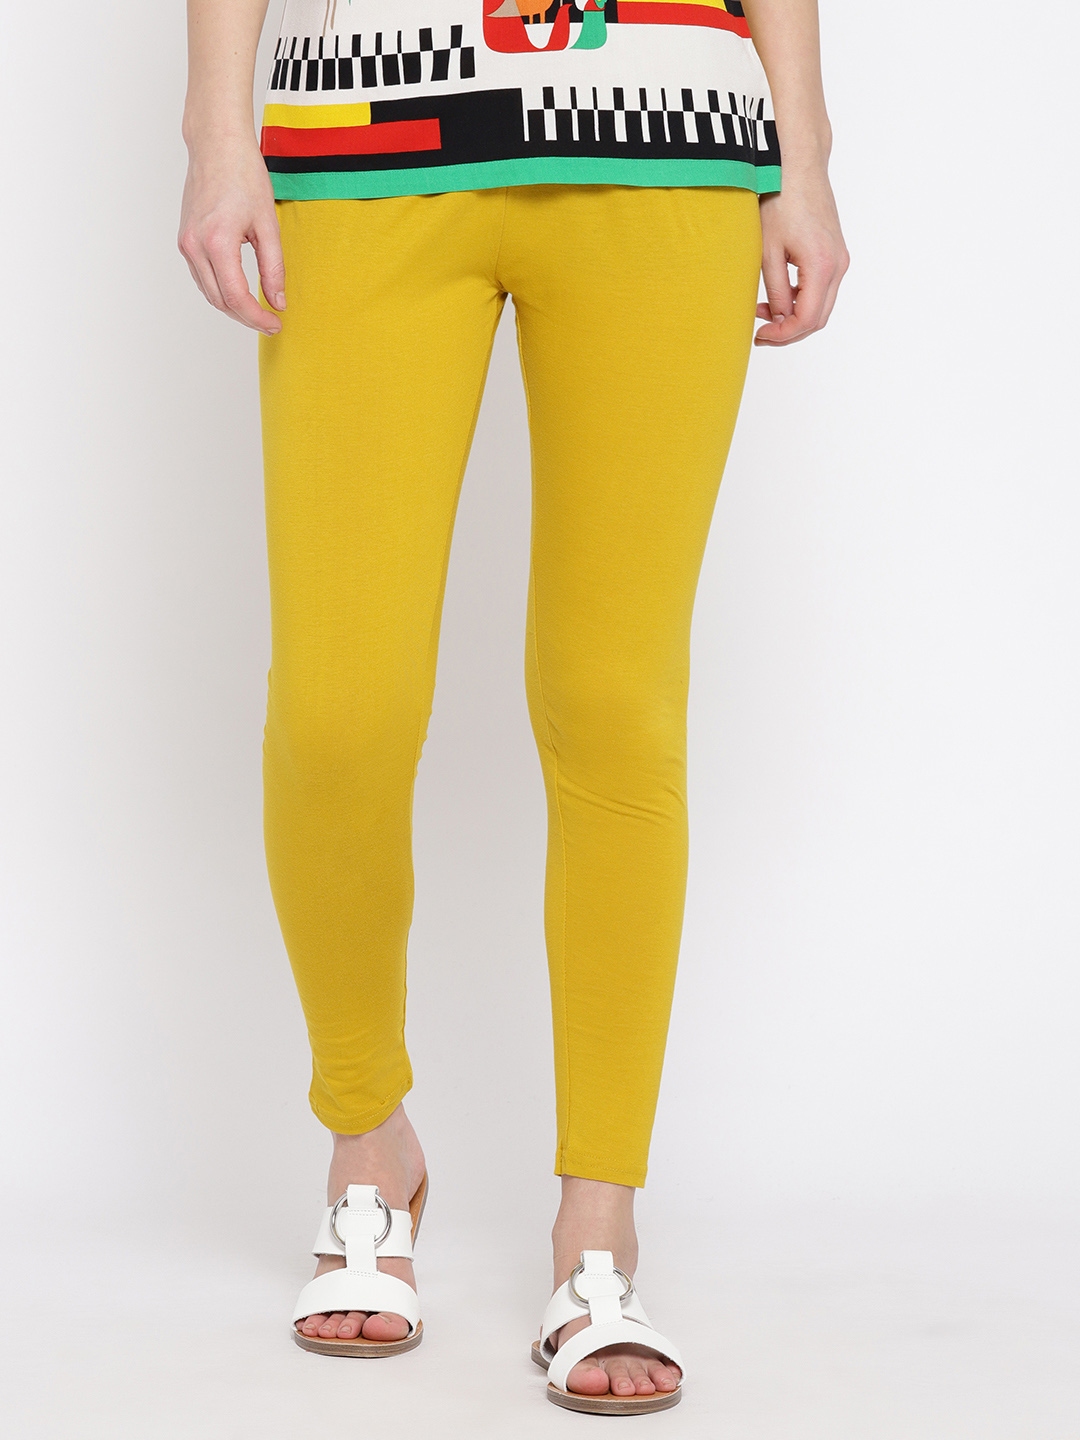 Buy Rangriti Mustard Yellow Leggings - Leggings for Women 4609853 | Myntra